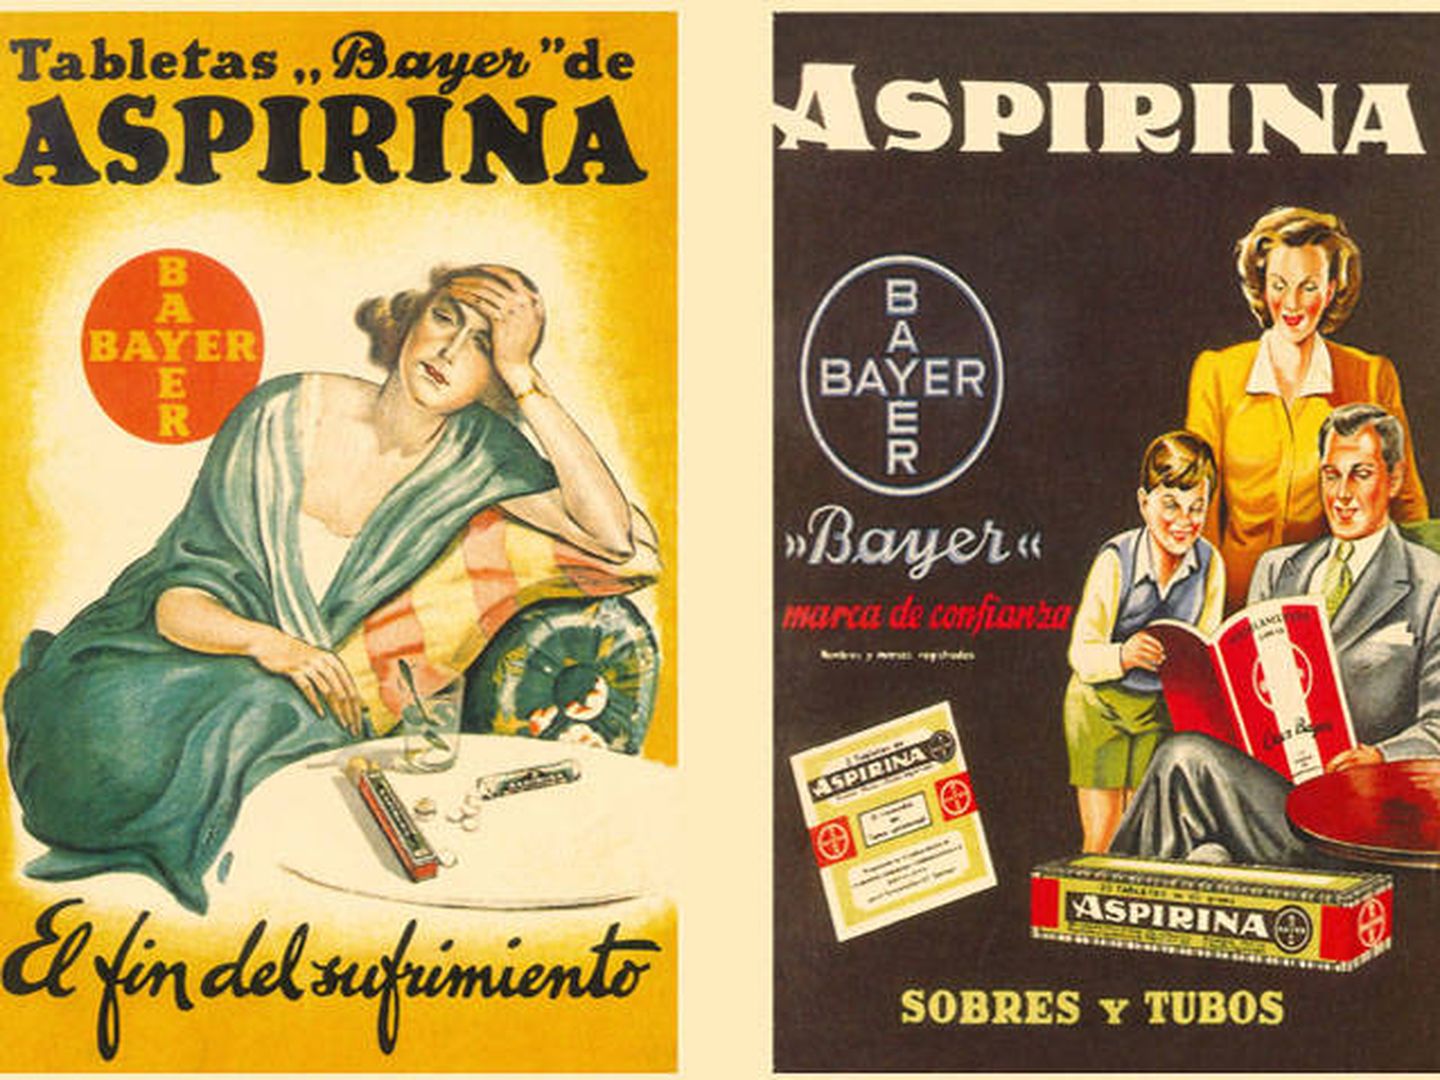 La Aspirina lleva toda la vida con nosotros (El Blog de Bayer)